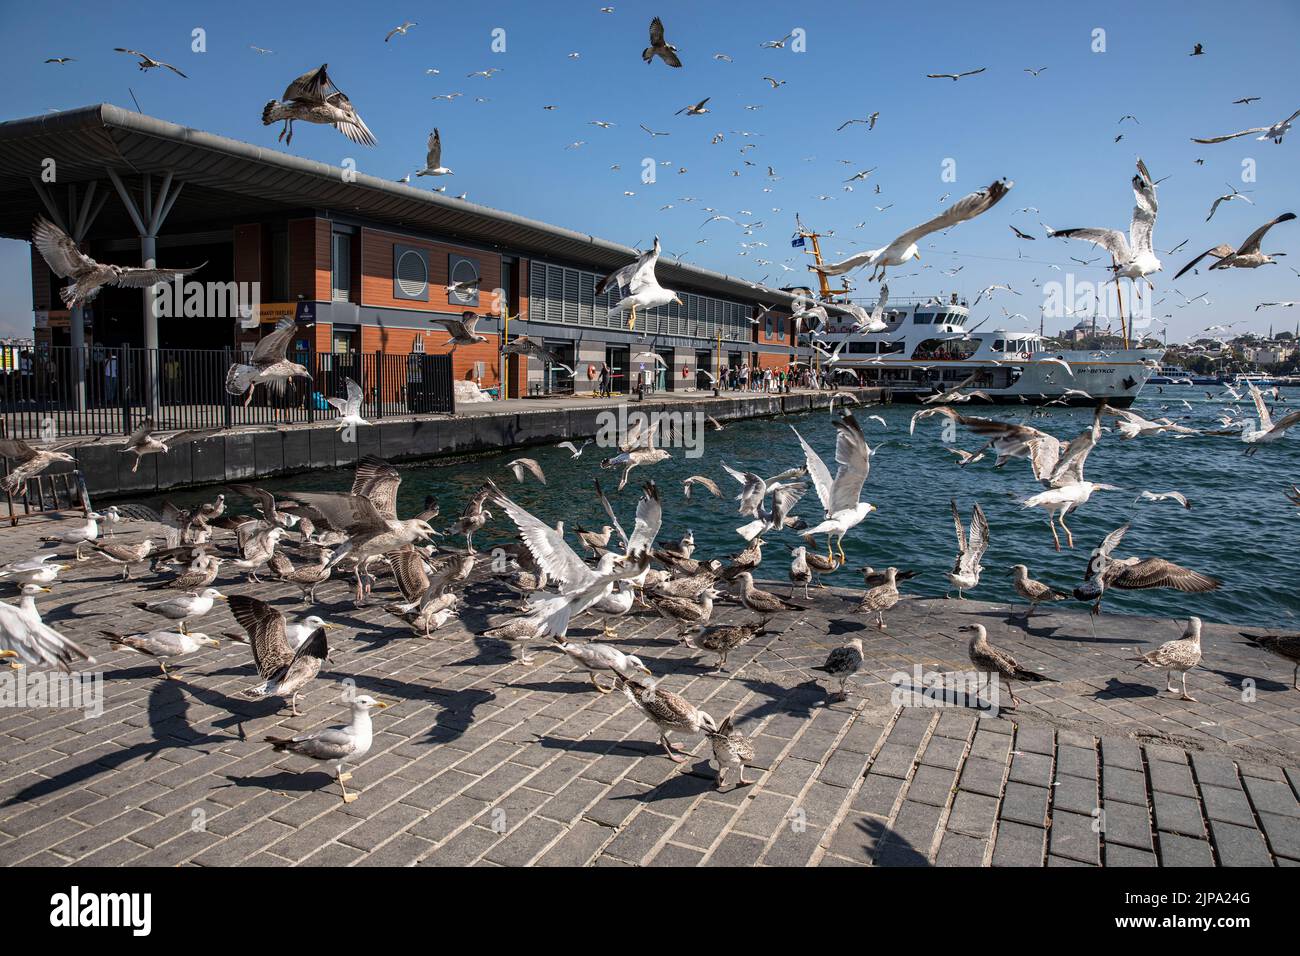 Möwen sahen, wie sie sich von den weggeworfenen Speiseresten aus Restaurants ernährten, die an der Küste in der Nähe des Kazakoy, dem Pier von City Lines in Istanbul, zurückgelassen wurden. Stockfoto